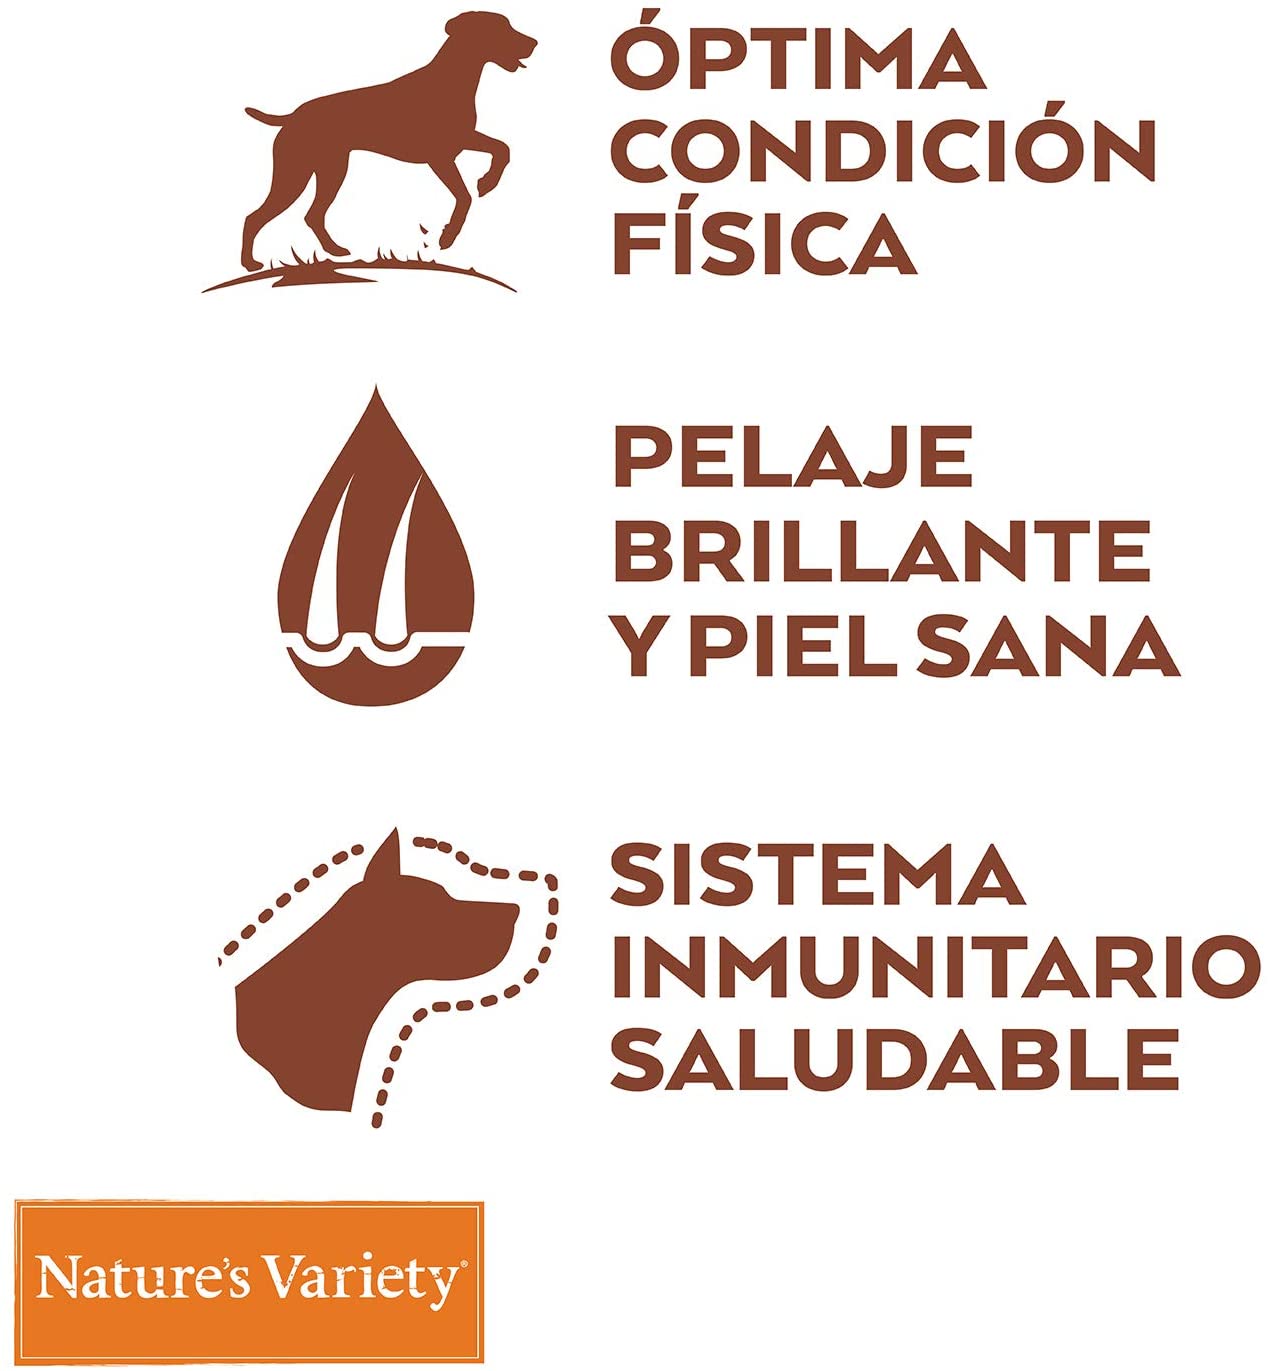 NATURE'S VARIETY SELECTED SALMÓN PARA PERRO Gabo&Gordo Pet Shop, Las Palmas de Gran Canaria